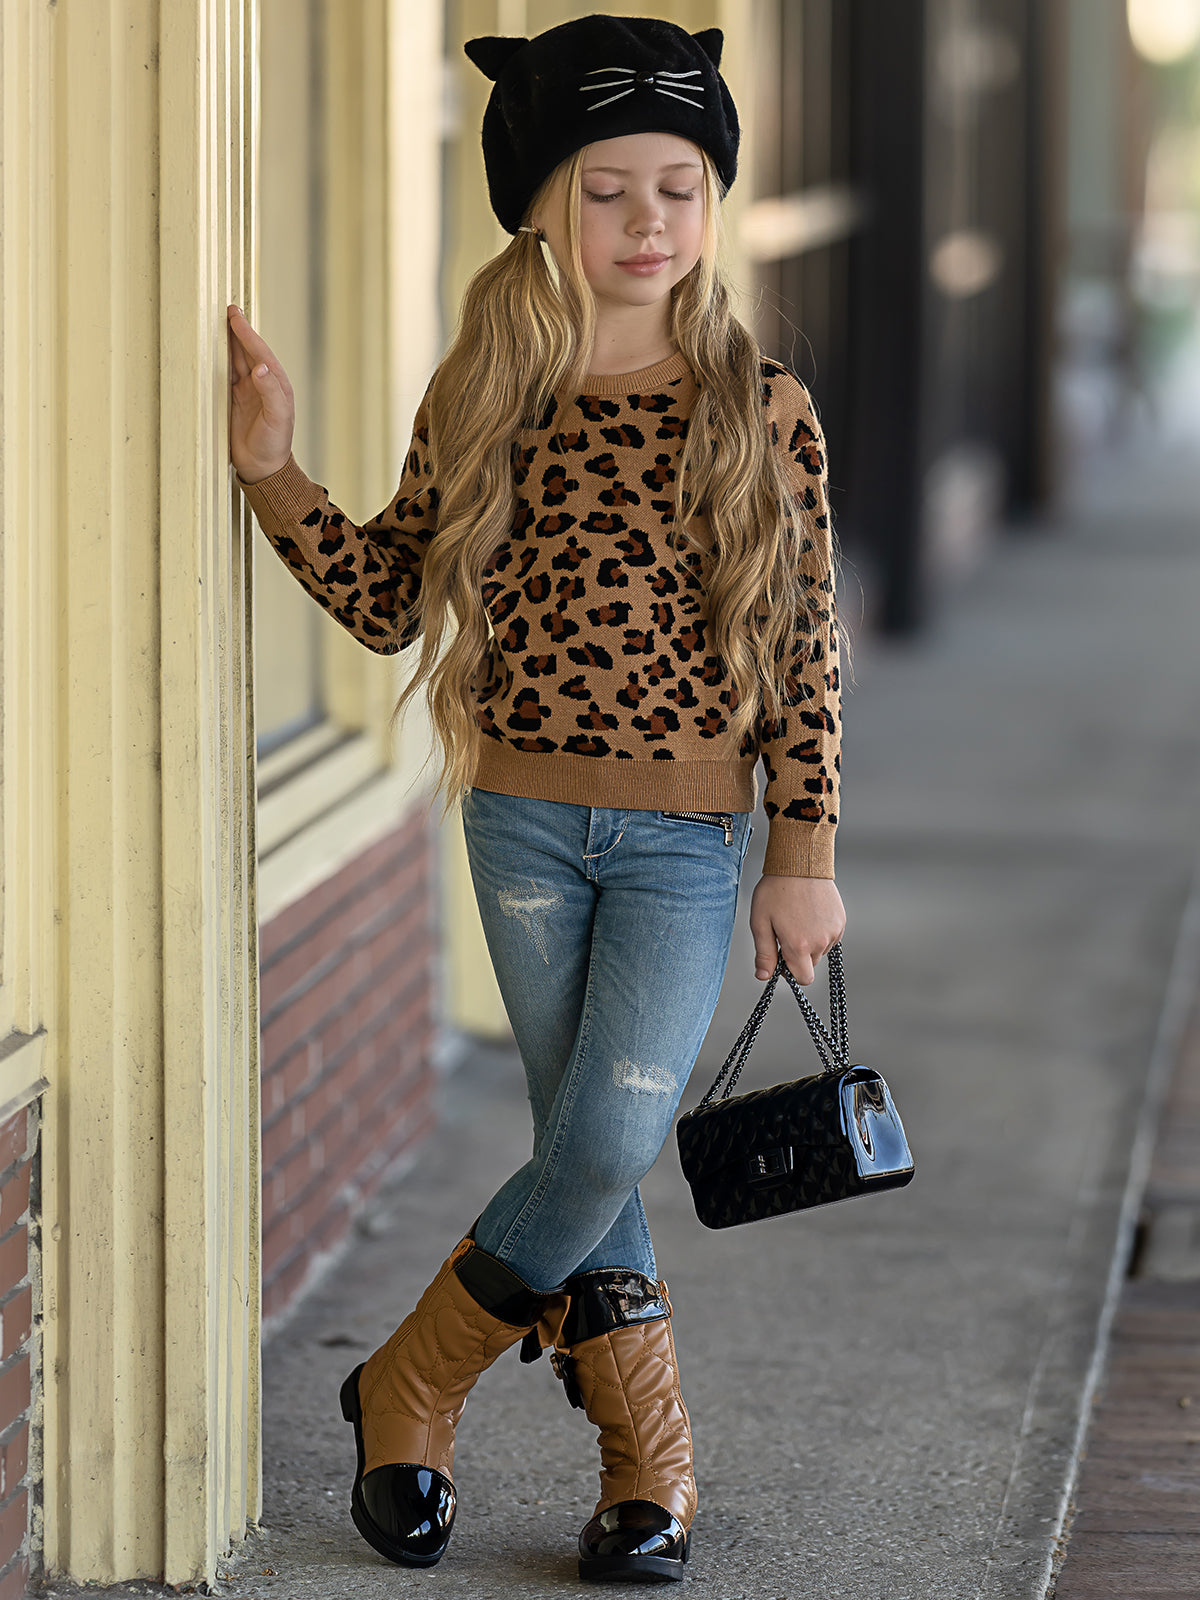 Kids Sweaters & Cardigans | Leopard Fuzzy Sweater | Mia Belle Girls